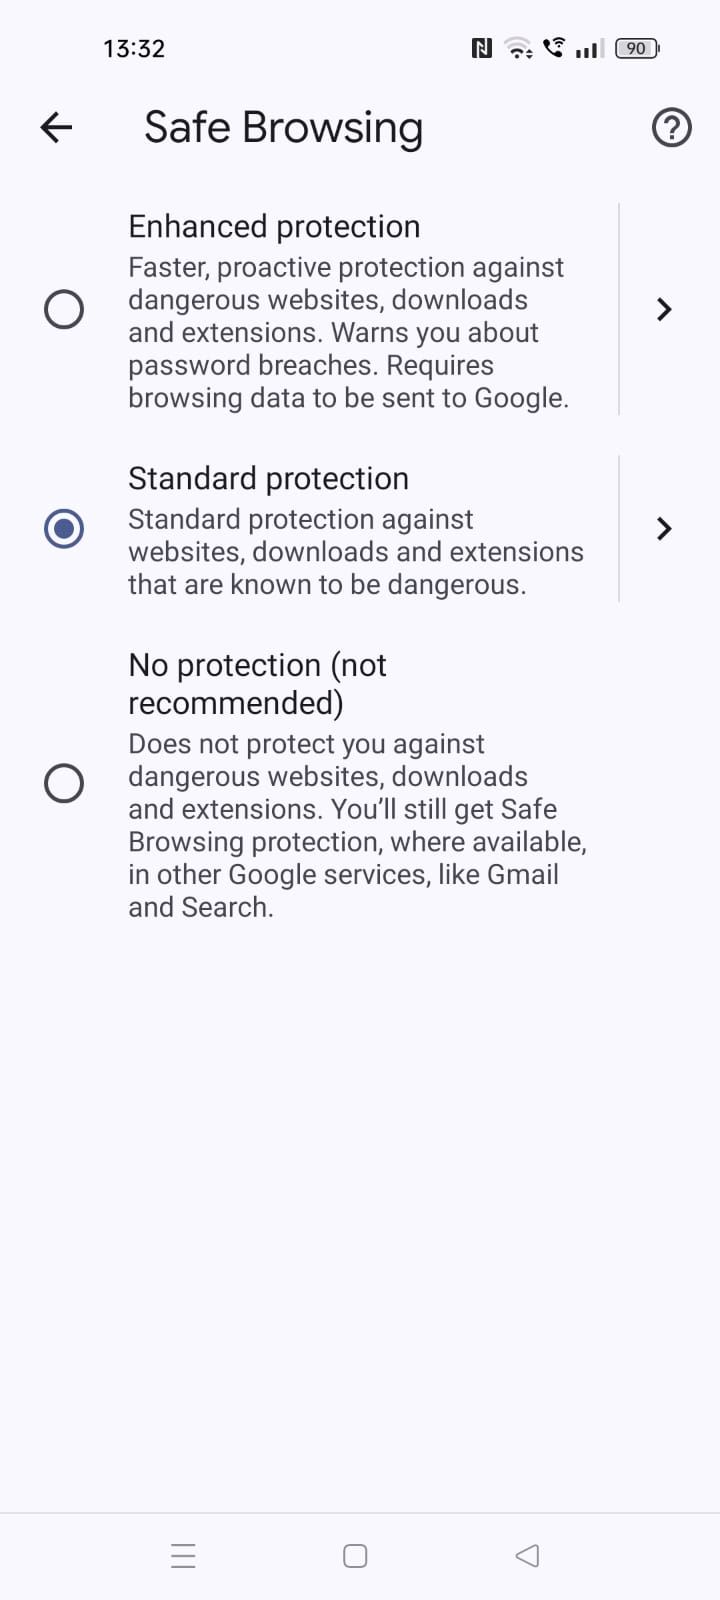 Captura de tela mostrando as opções de Navegação segura no aplicativo Chrome para dispositivos móveis